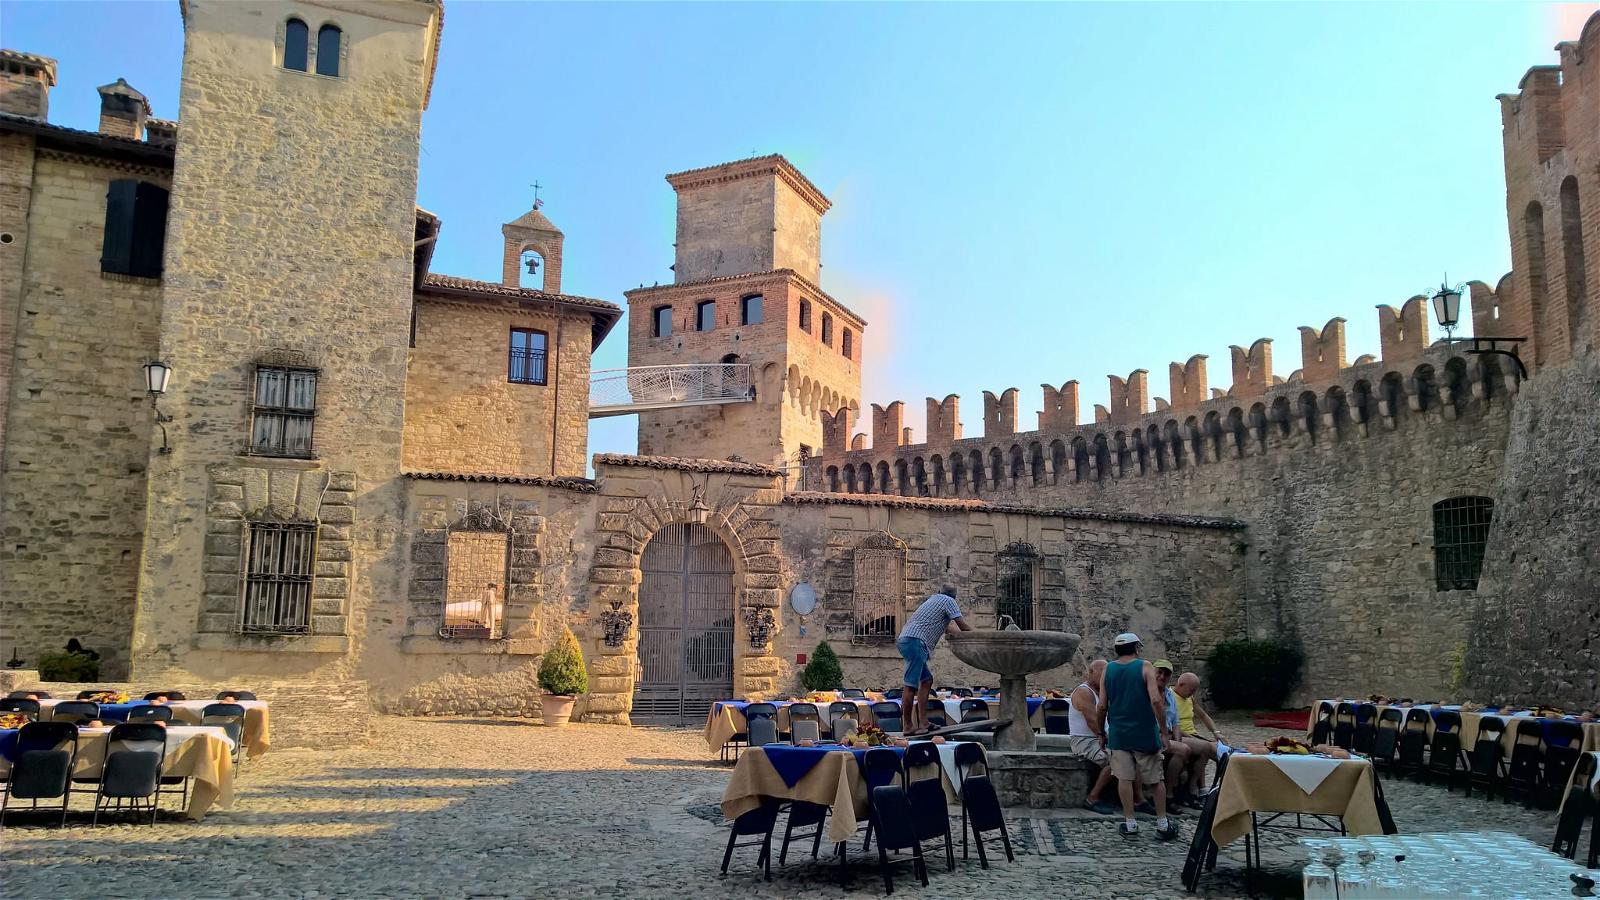 Castello di Vigoleno 的形象. italy castle italian italia emilia castelli emiliaromagna romagna vigoleno arquato cstello castelloborgodivigoleno